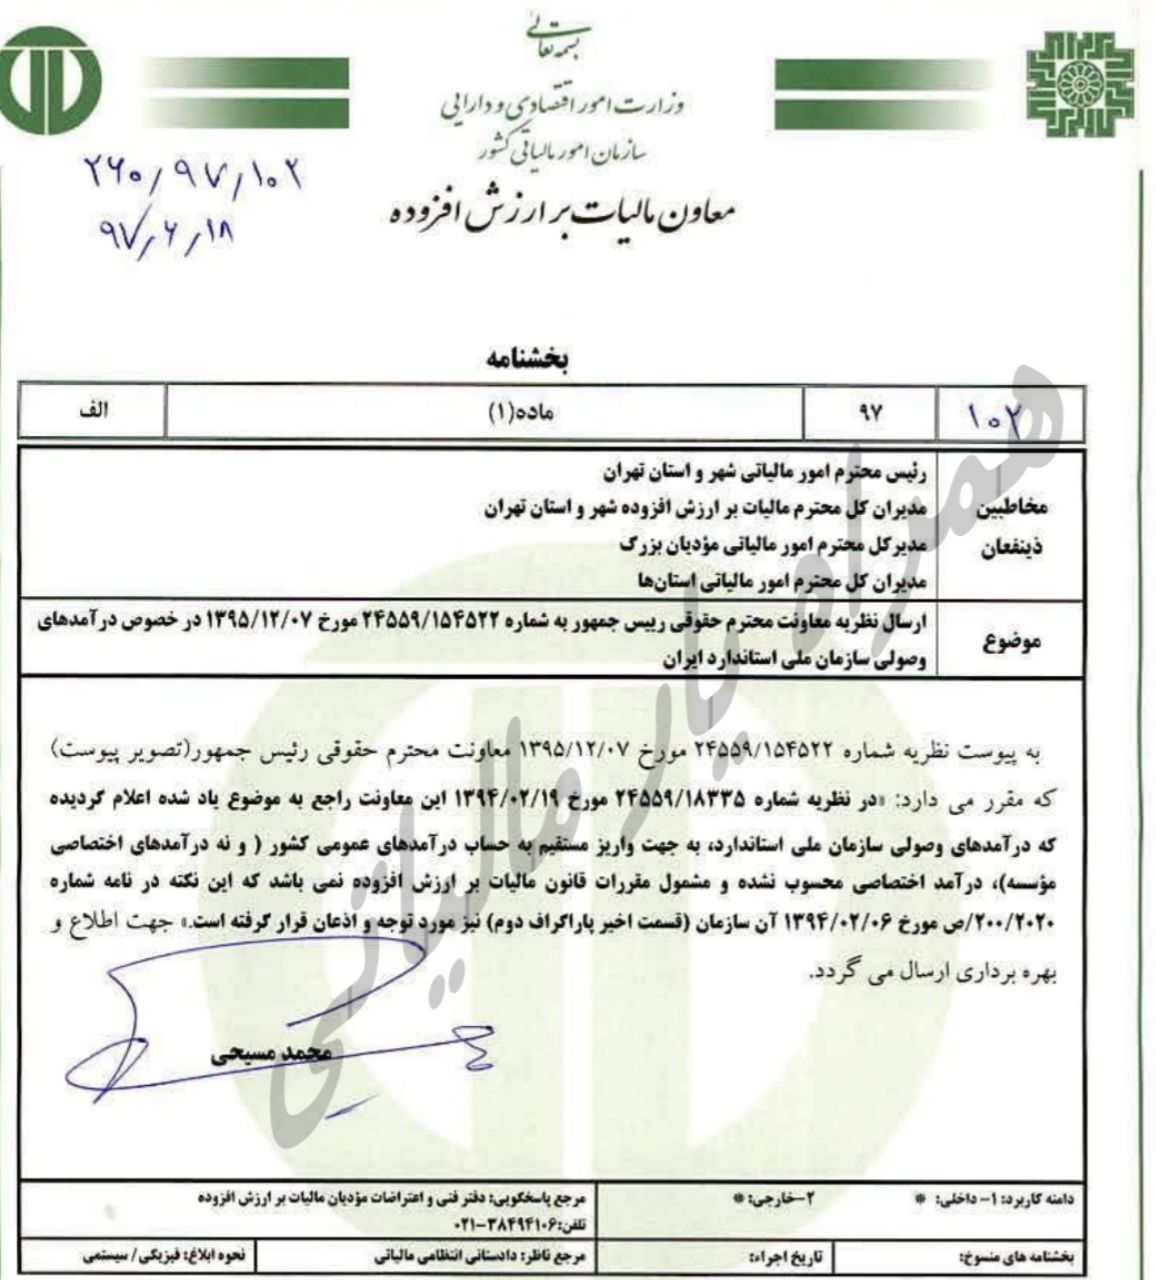  ارسال نظر معاونت محترم حقوقی در خصوص درآمدهای وصولی سازمان ملی استاندارد ایران